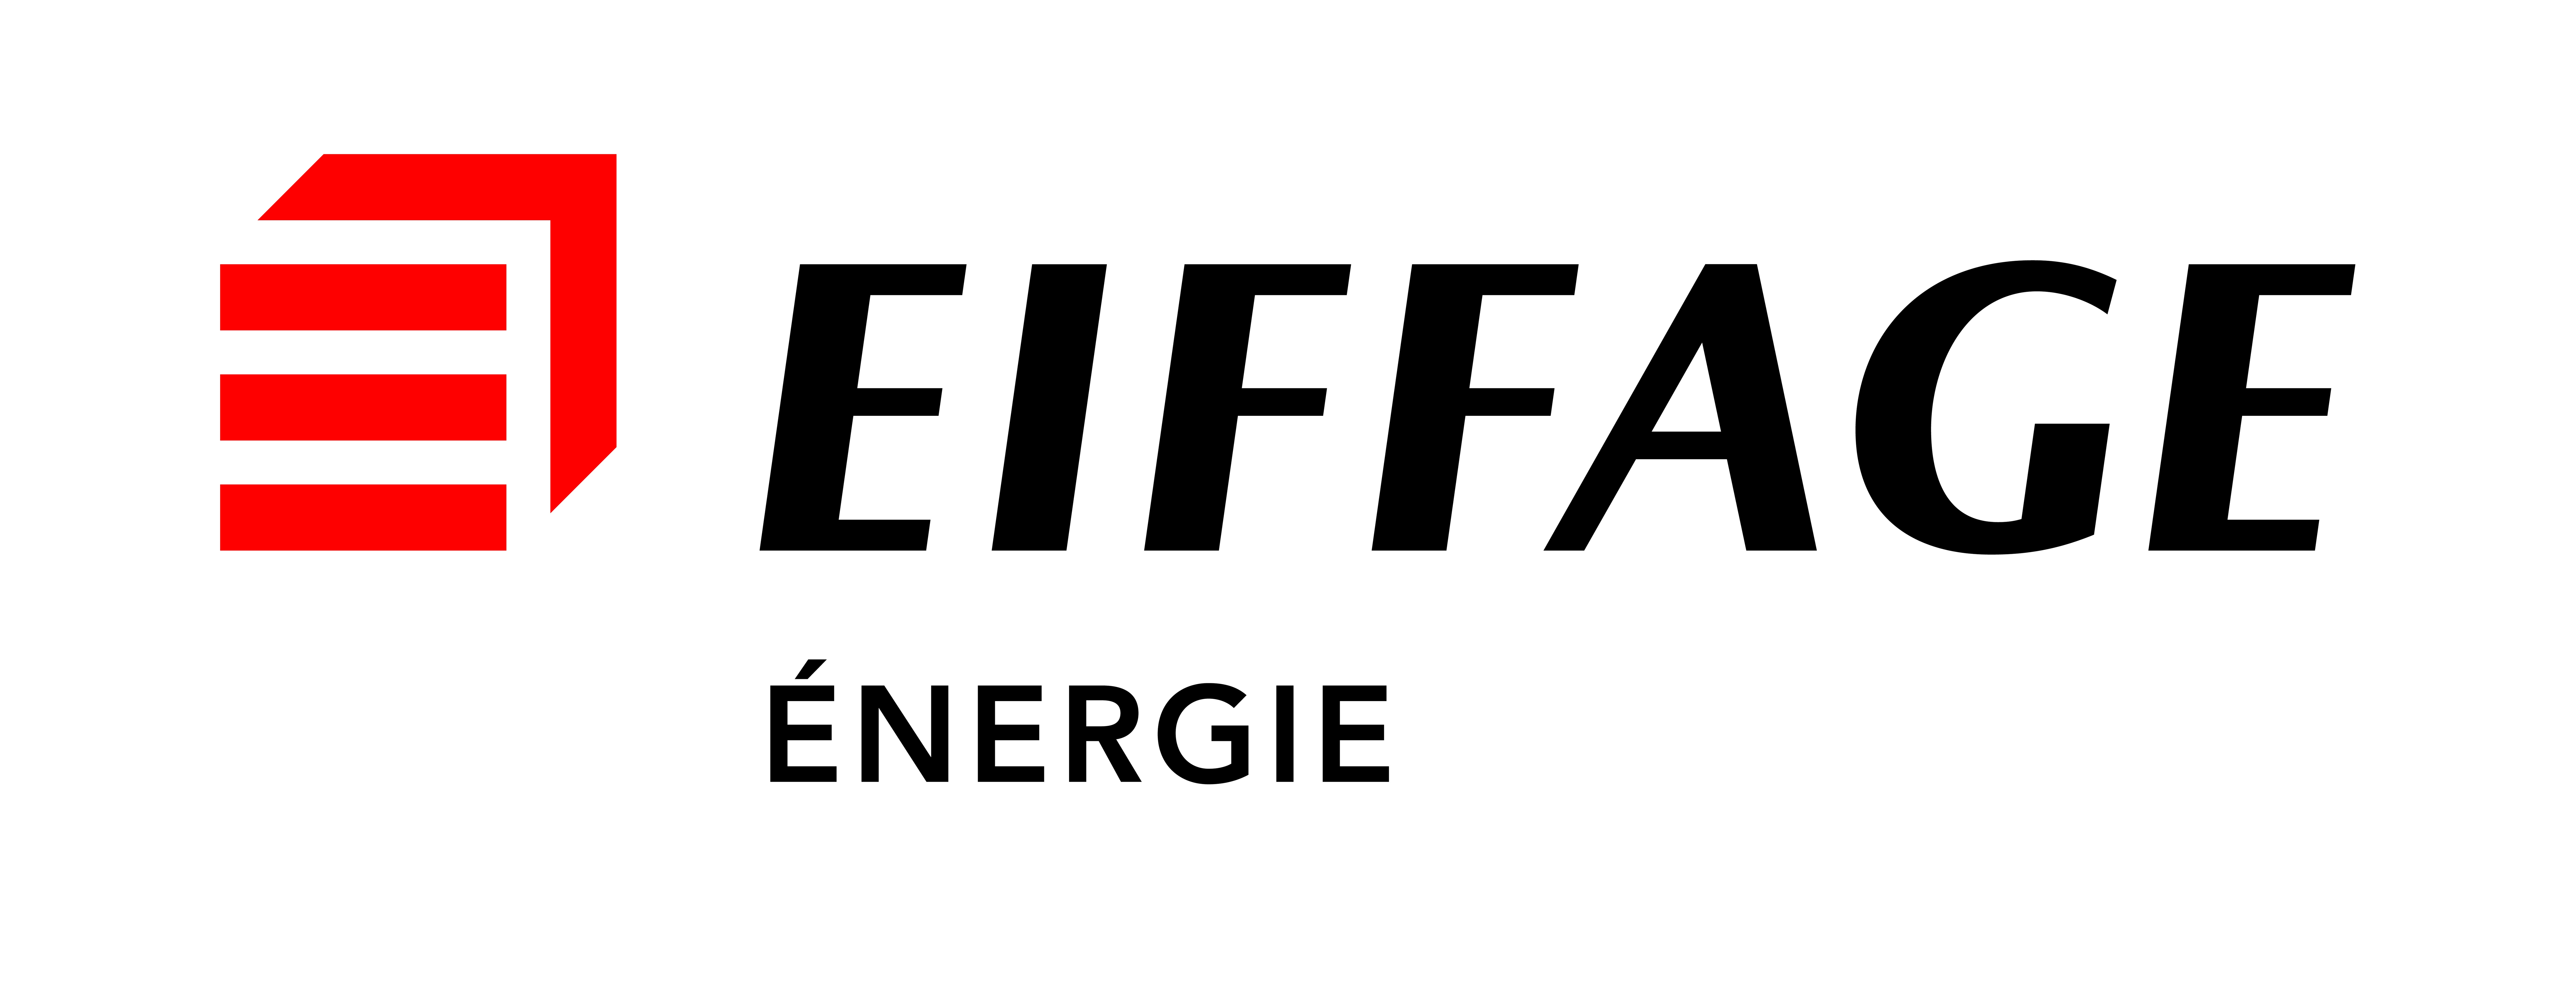 Eiffage Energie Grand Est a récemment adhéré à l'Association Elles Bougent.